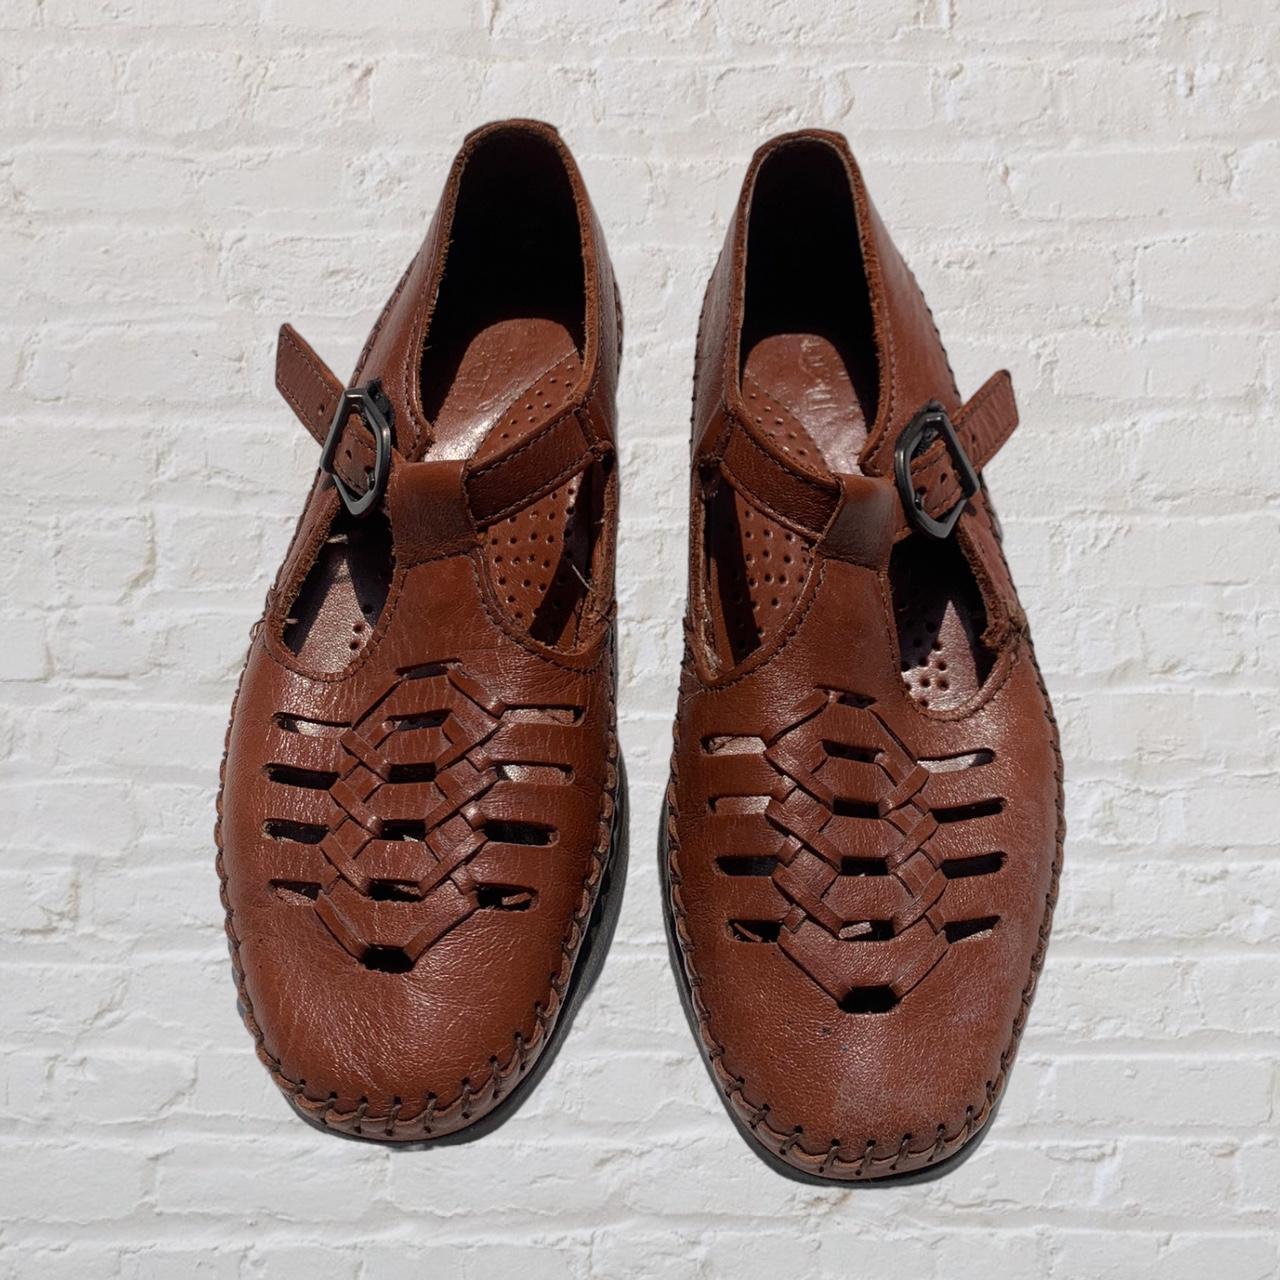 Klonks sandal clogs 1970s 1980s | Wooden sandals, Asian shoes, Sandals